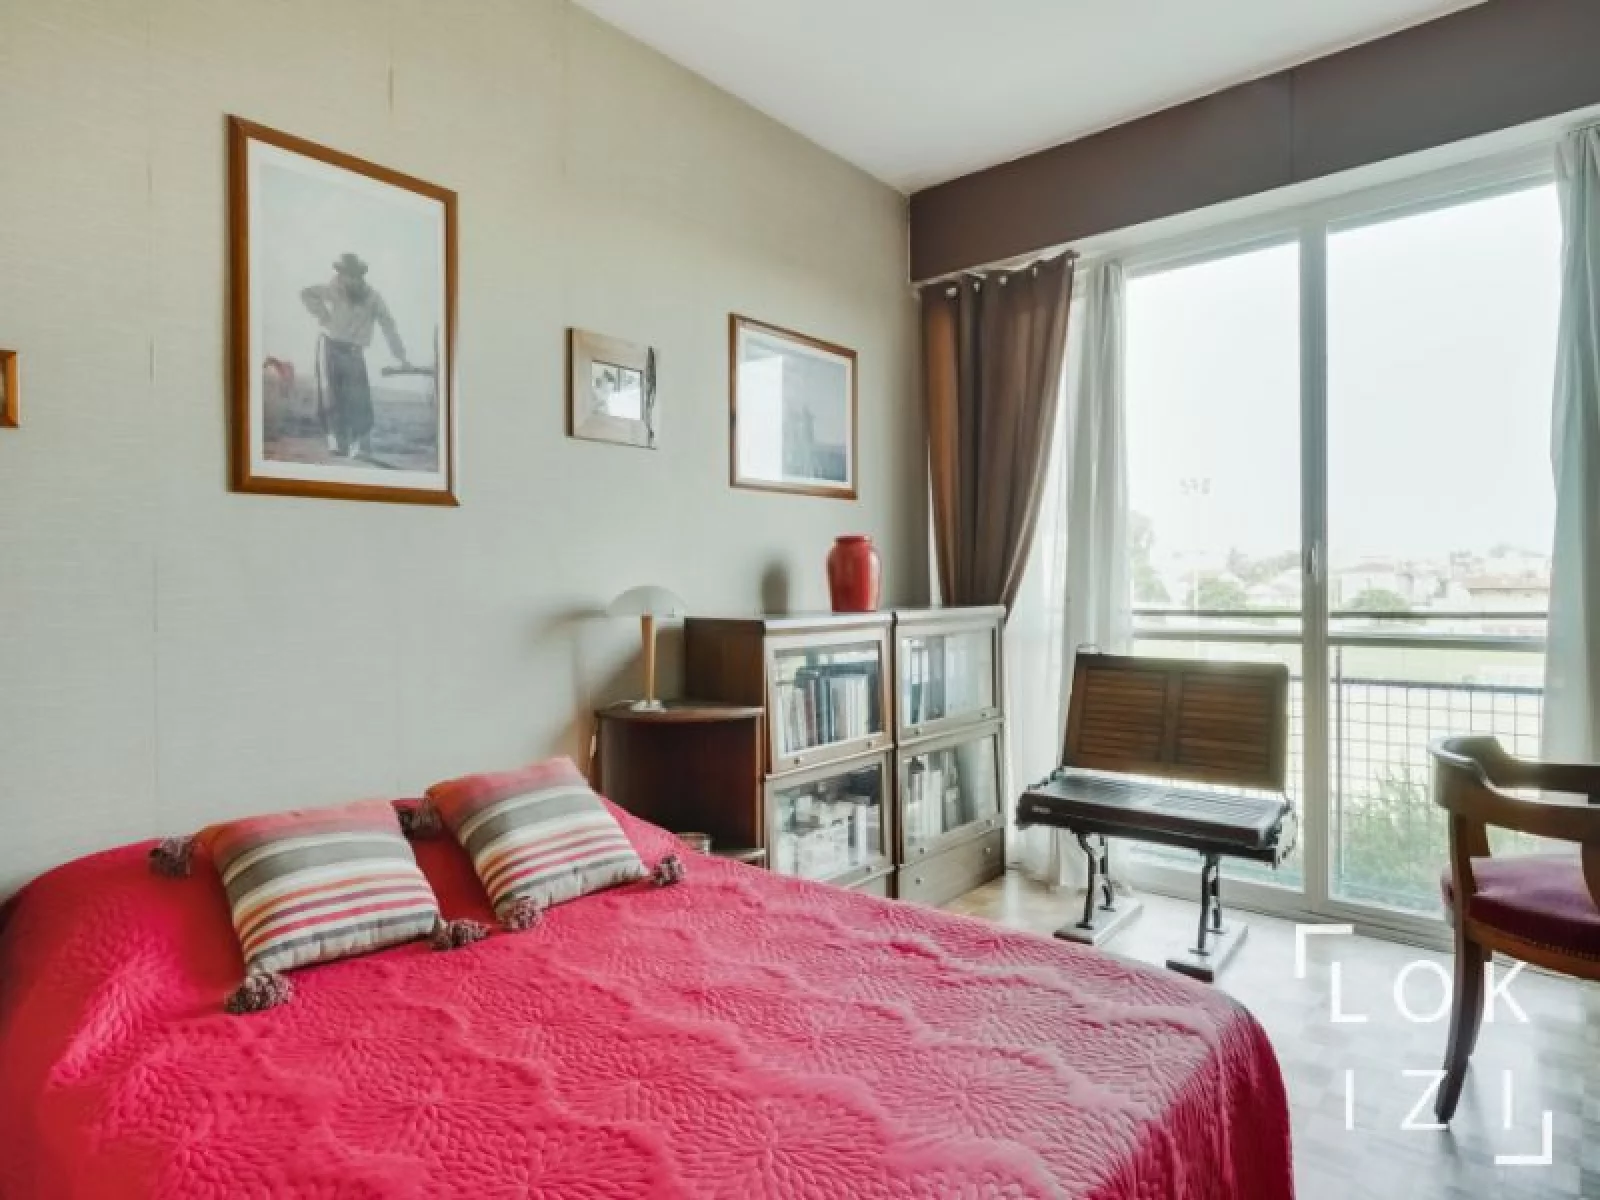 Location appartement meublé 4 pièces 106m² (Bordeaux - Caudéran)